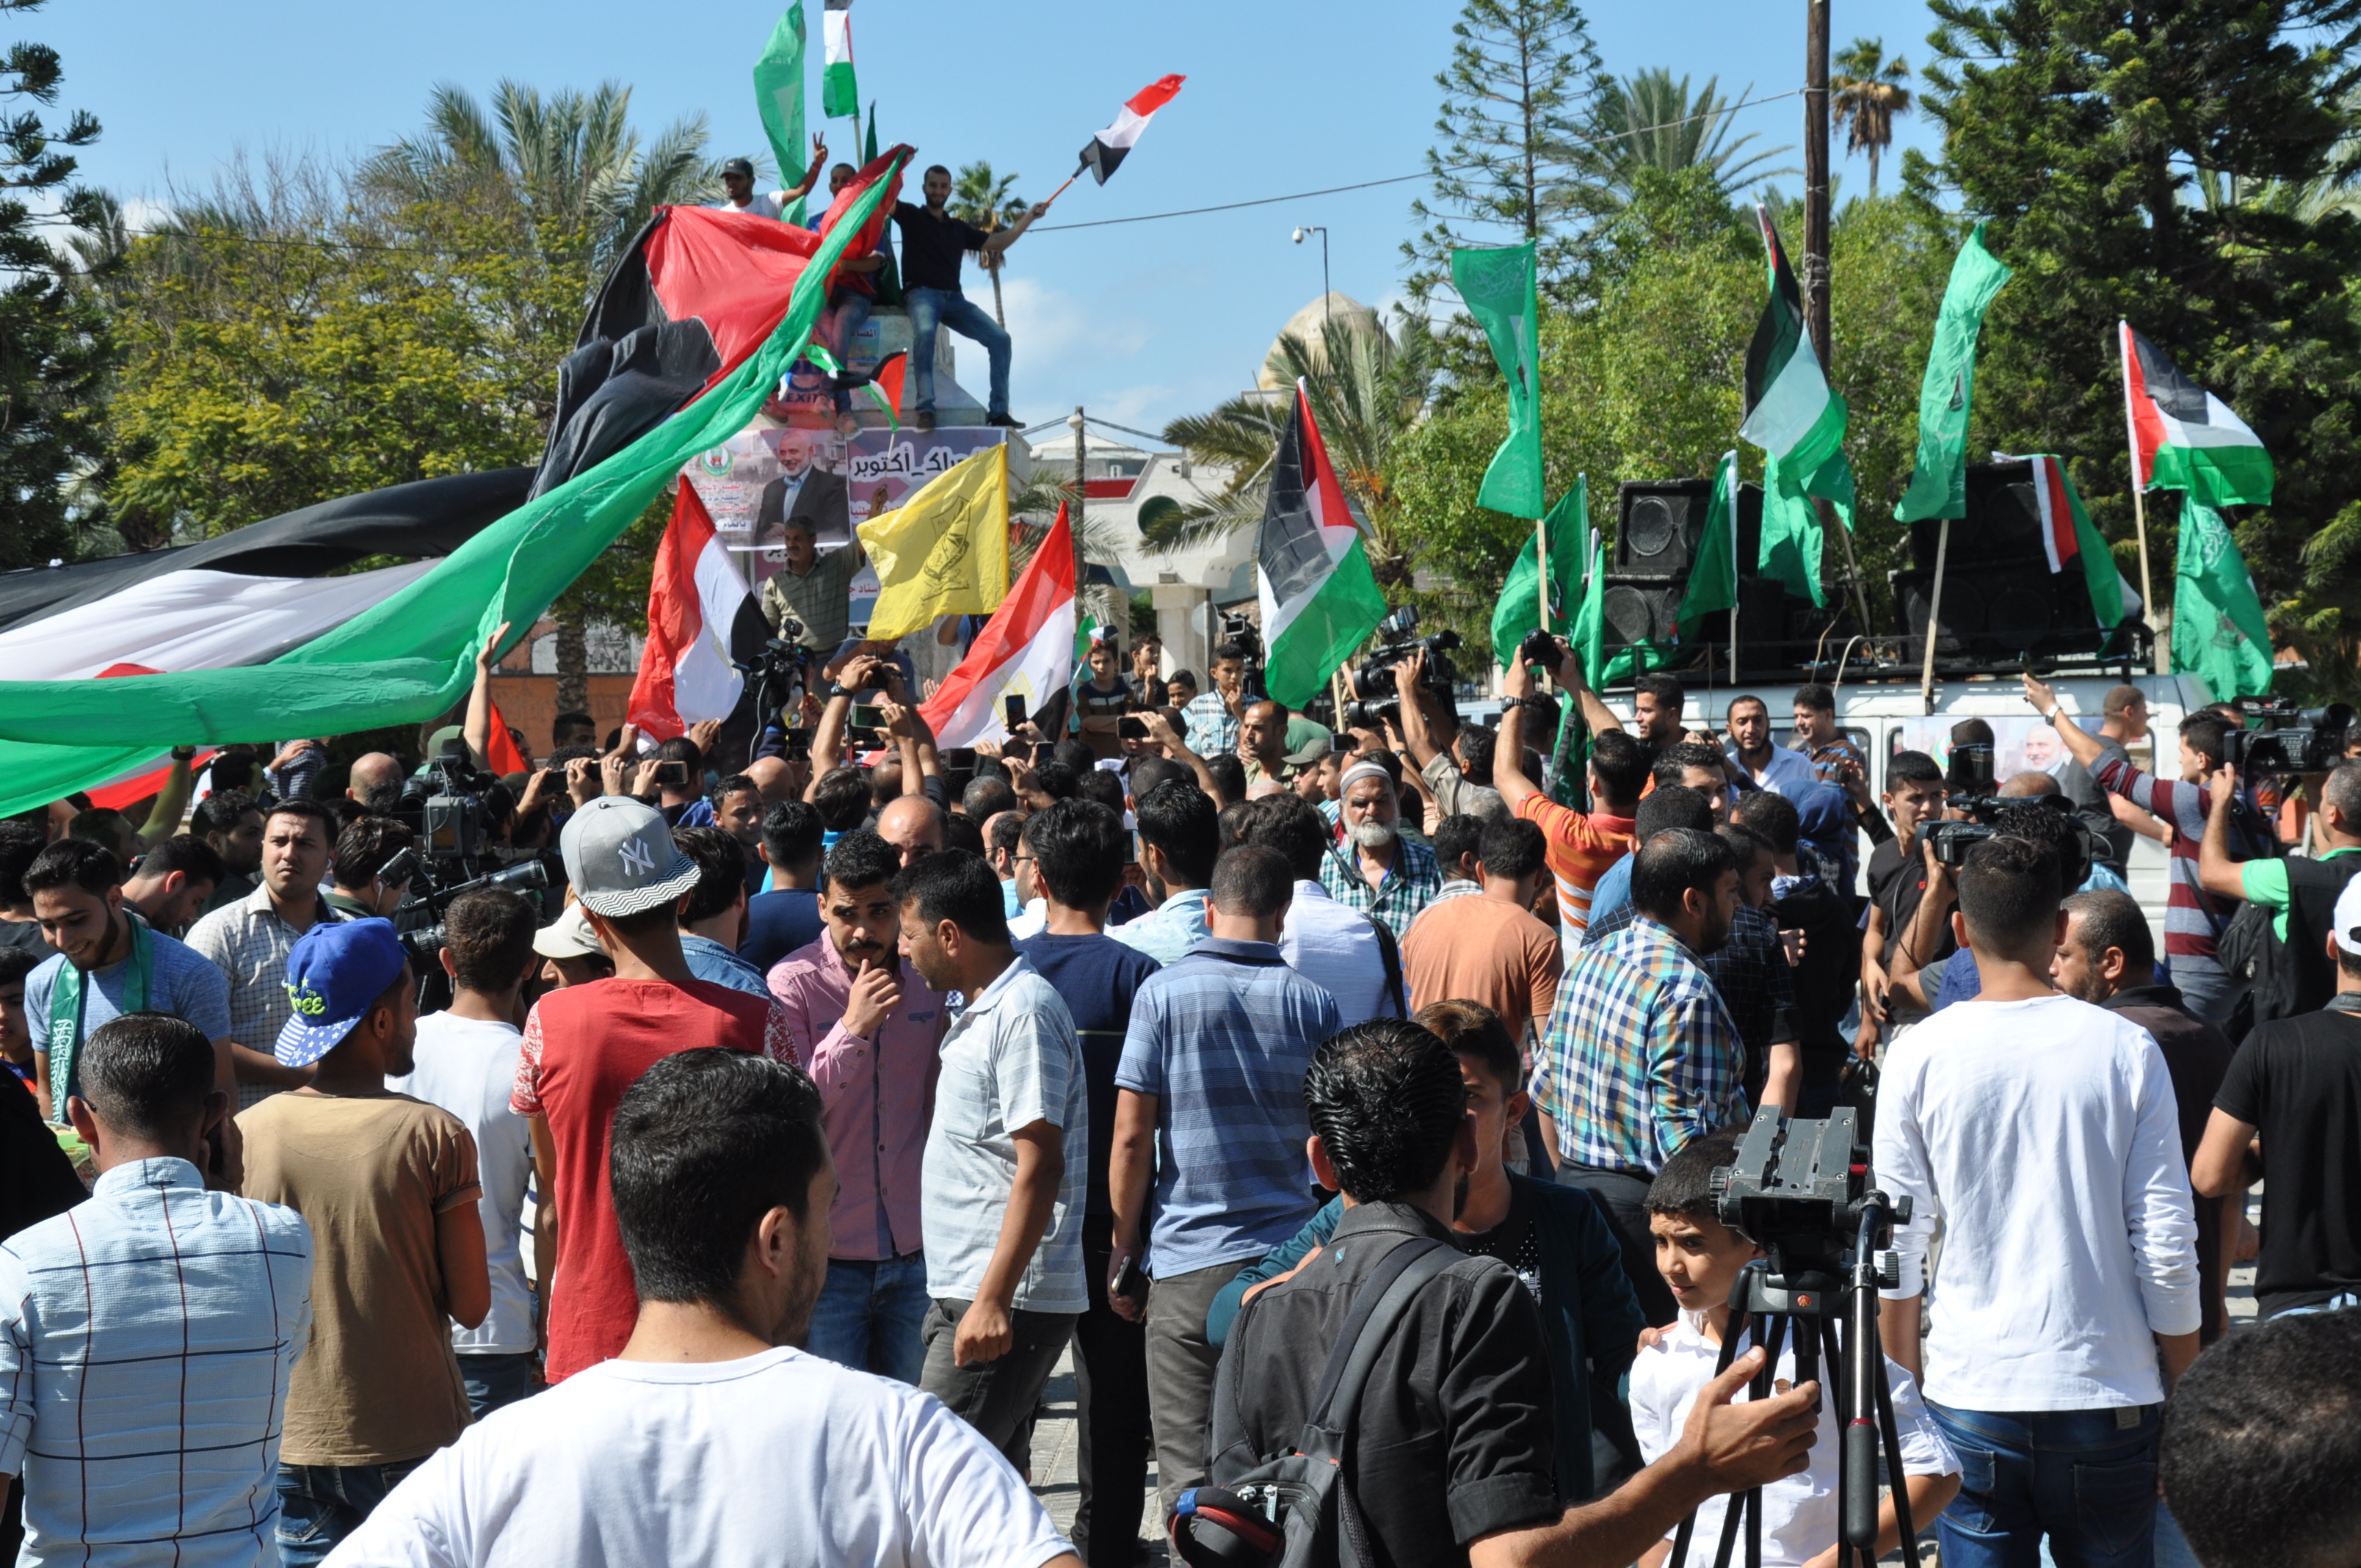 عشرات الفلسطينيين وسط قطاع غزة للتعبير عن فرحتهم بالمصالحة وإنهاء الانقسام